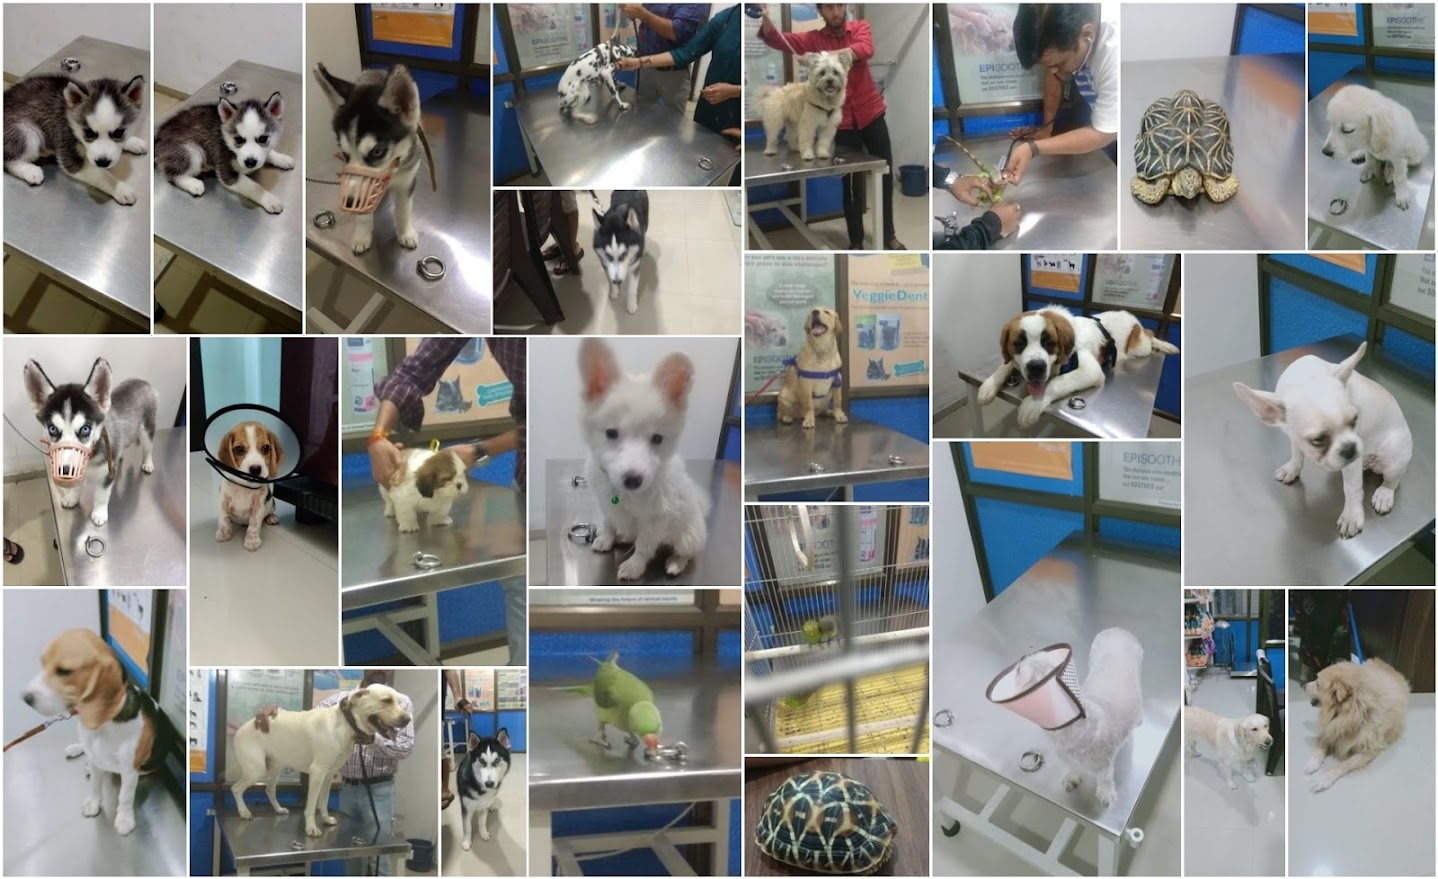 Dr soni's pet clinic - Animal Hospital in Adajan